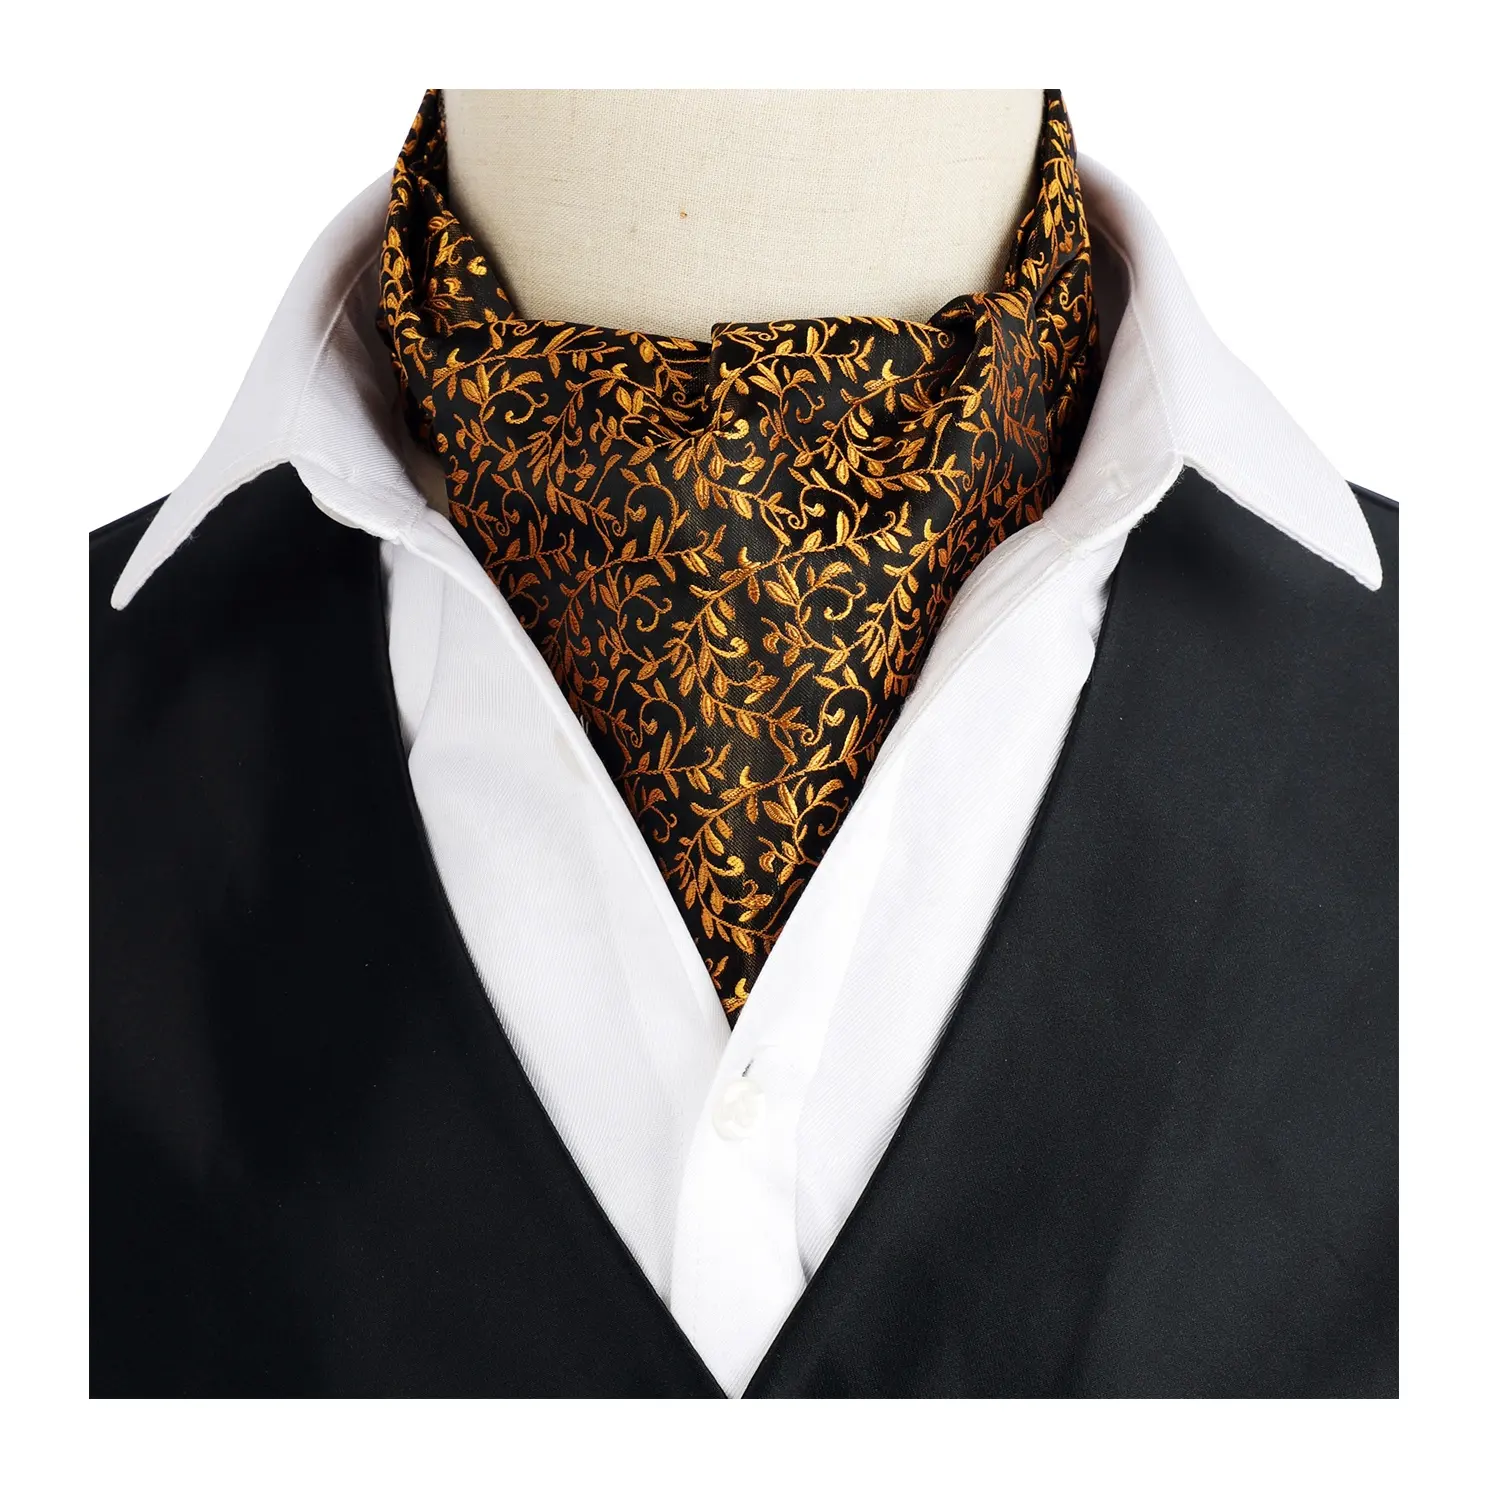 Mens Cravat Tie Set Paisley Floral Ascot Cravat Necktie Wedding Formal Suit Tie for Men